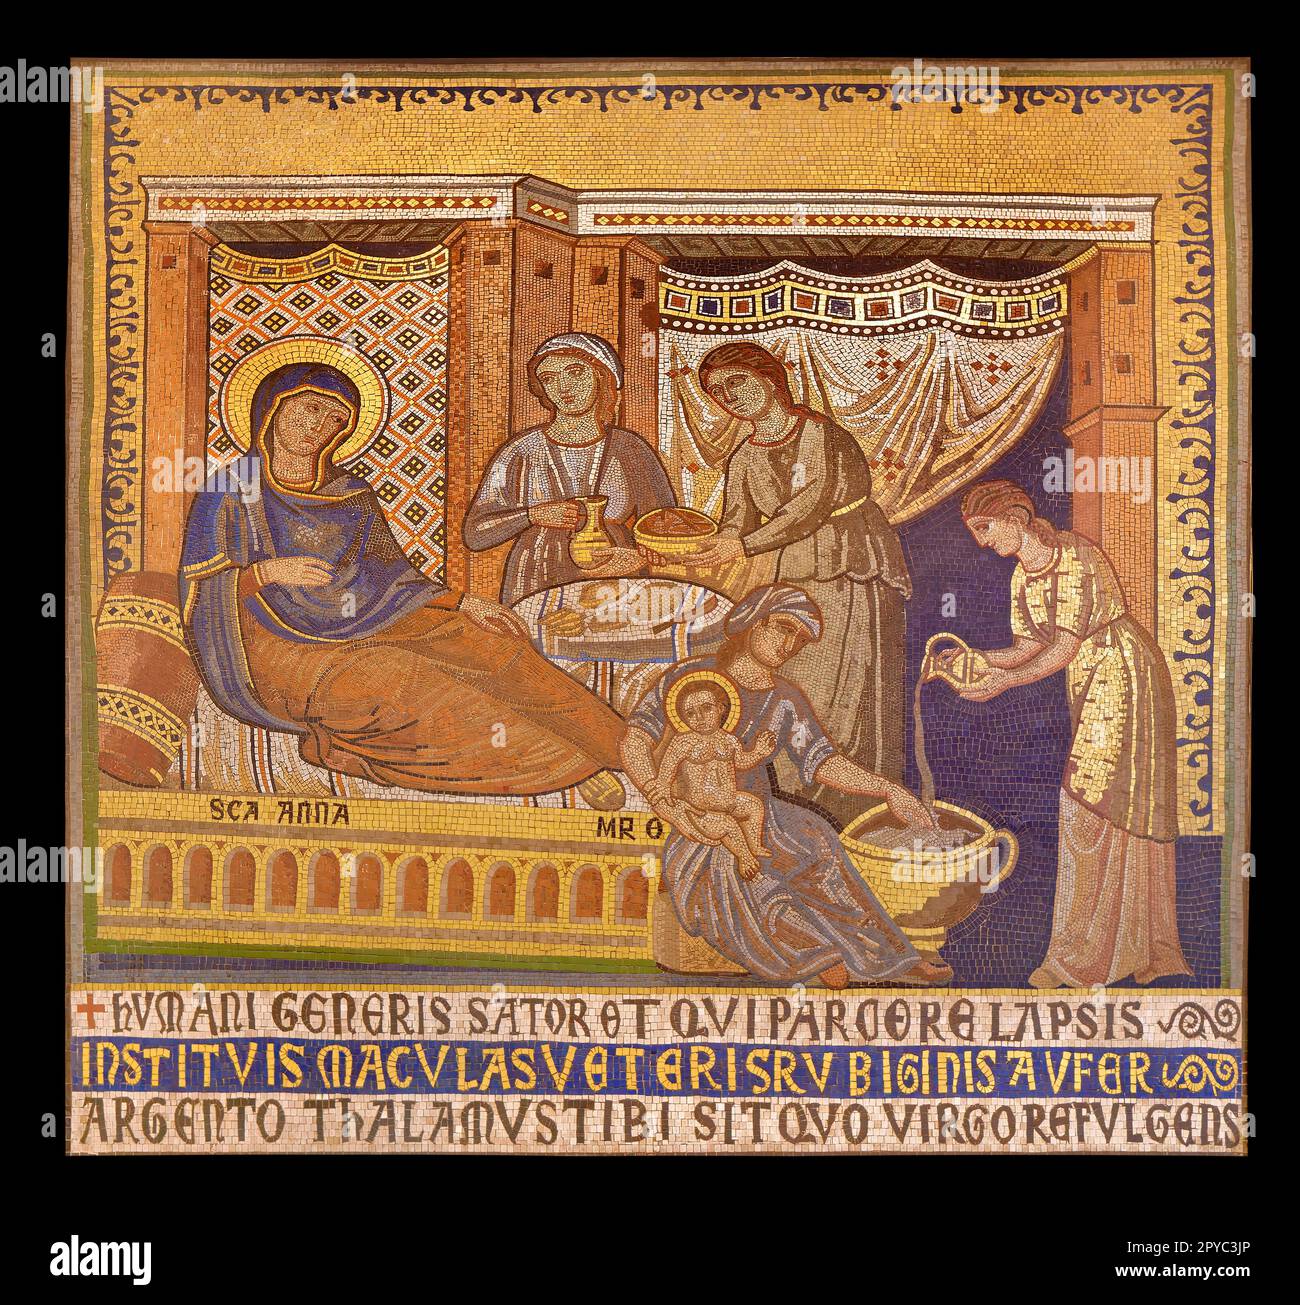 Stoke Firm Minton Hollins' Kopie Fliesenmosaik des Pietro Cavallini Mosaiks 'Geburt der Jungfrau' in der Kirche Sta. Maria Trastevere, Rom. Stockfoto